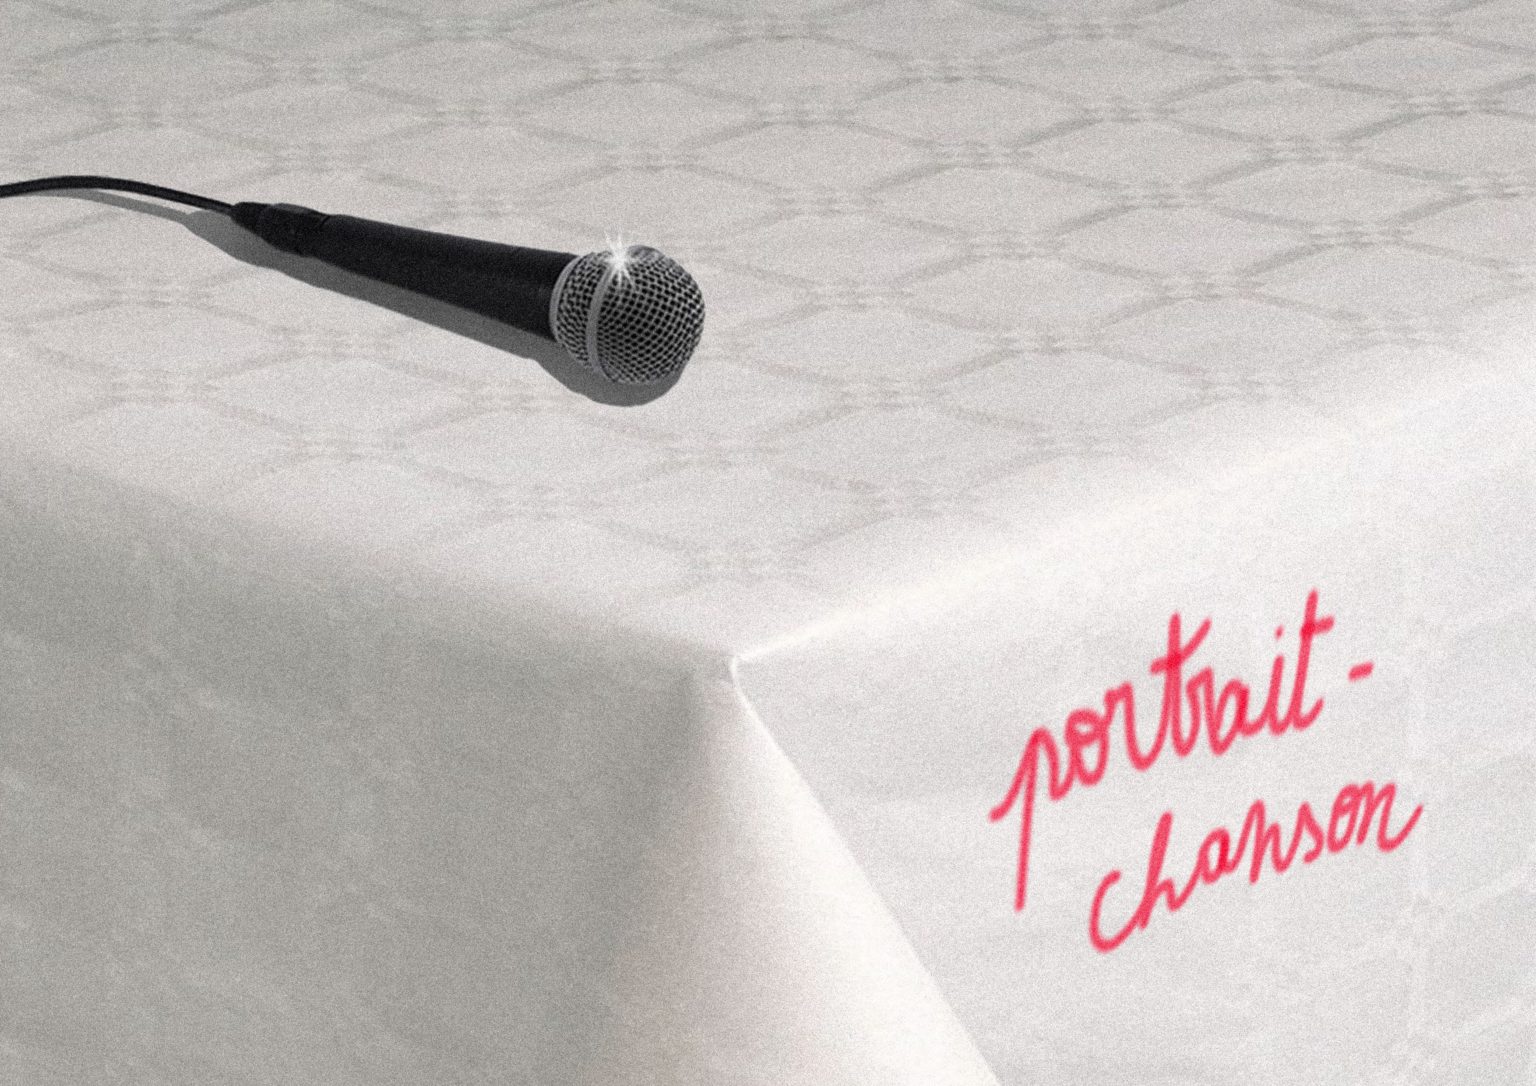 Sur une table avec une nappe blanche, on voit un micro et les mots "portrait-chanson"